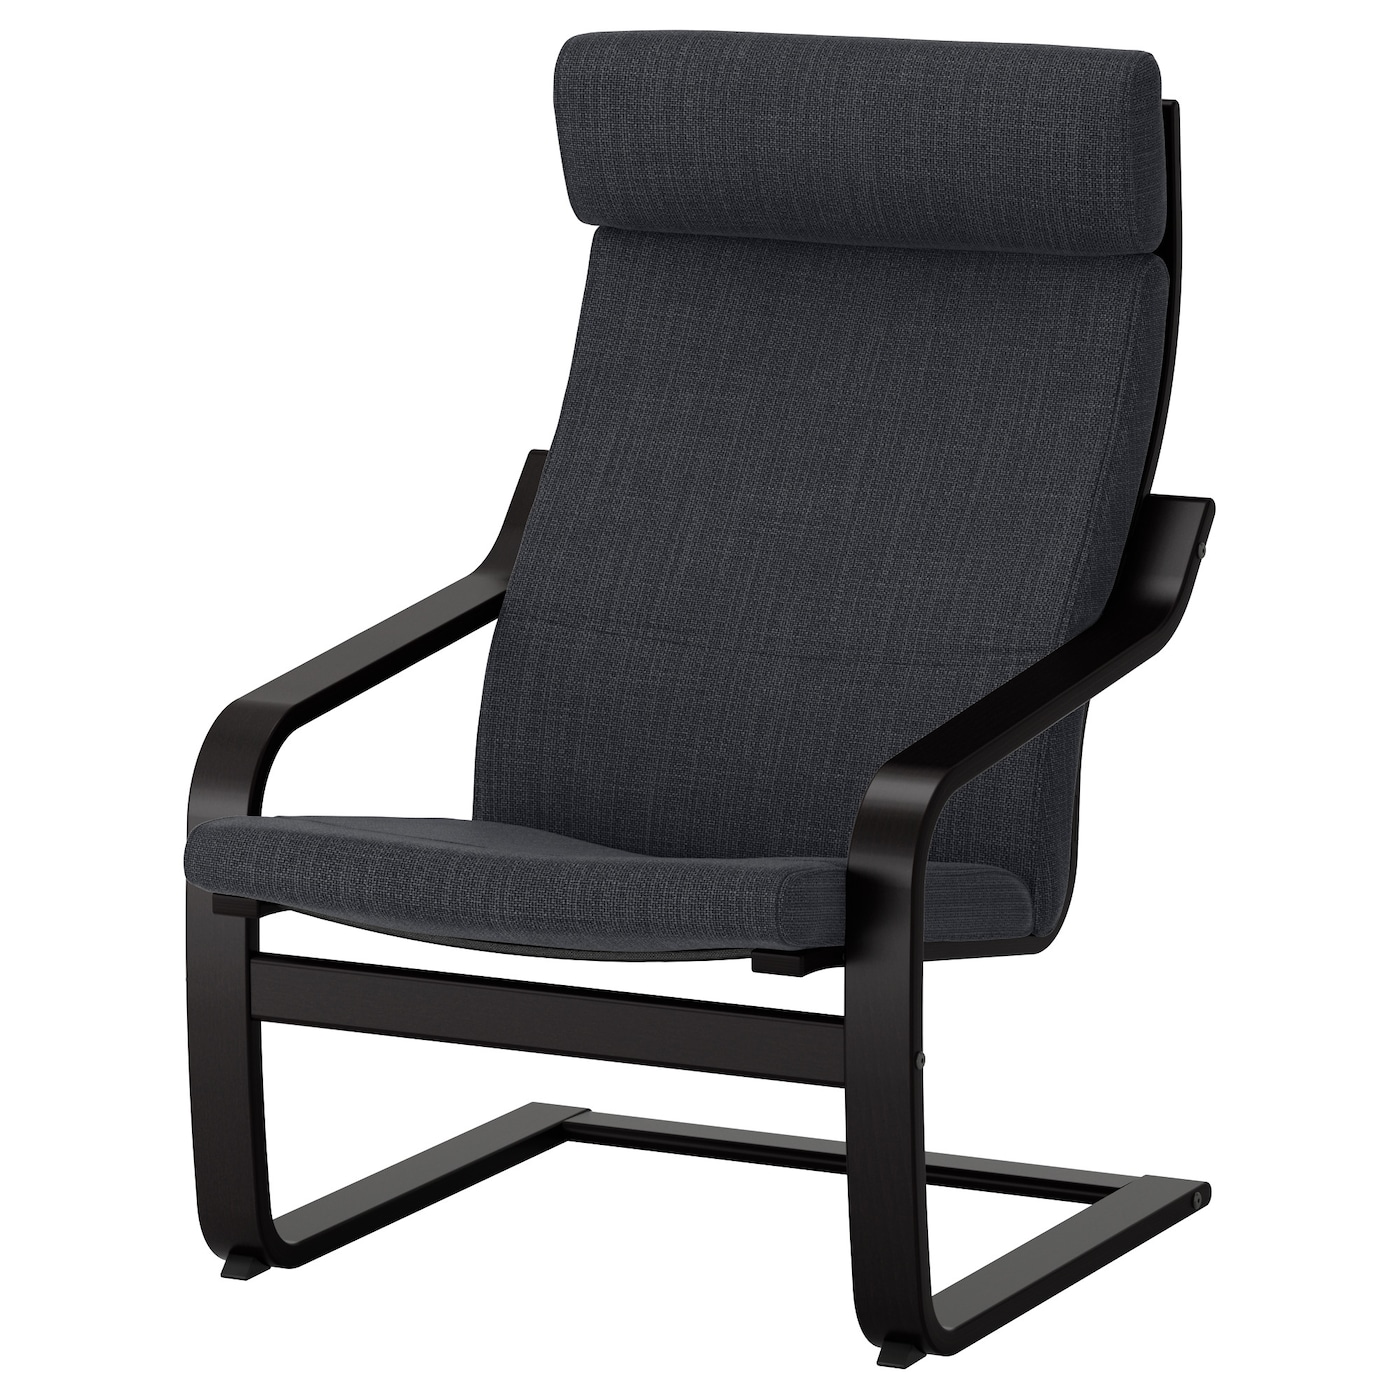 ПОЭНГ Кресло, черно-коричневый/Хилларед антрацит POÄNG IKEA кресло для геймеров drift dr550 коричневый